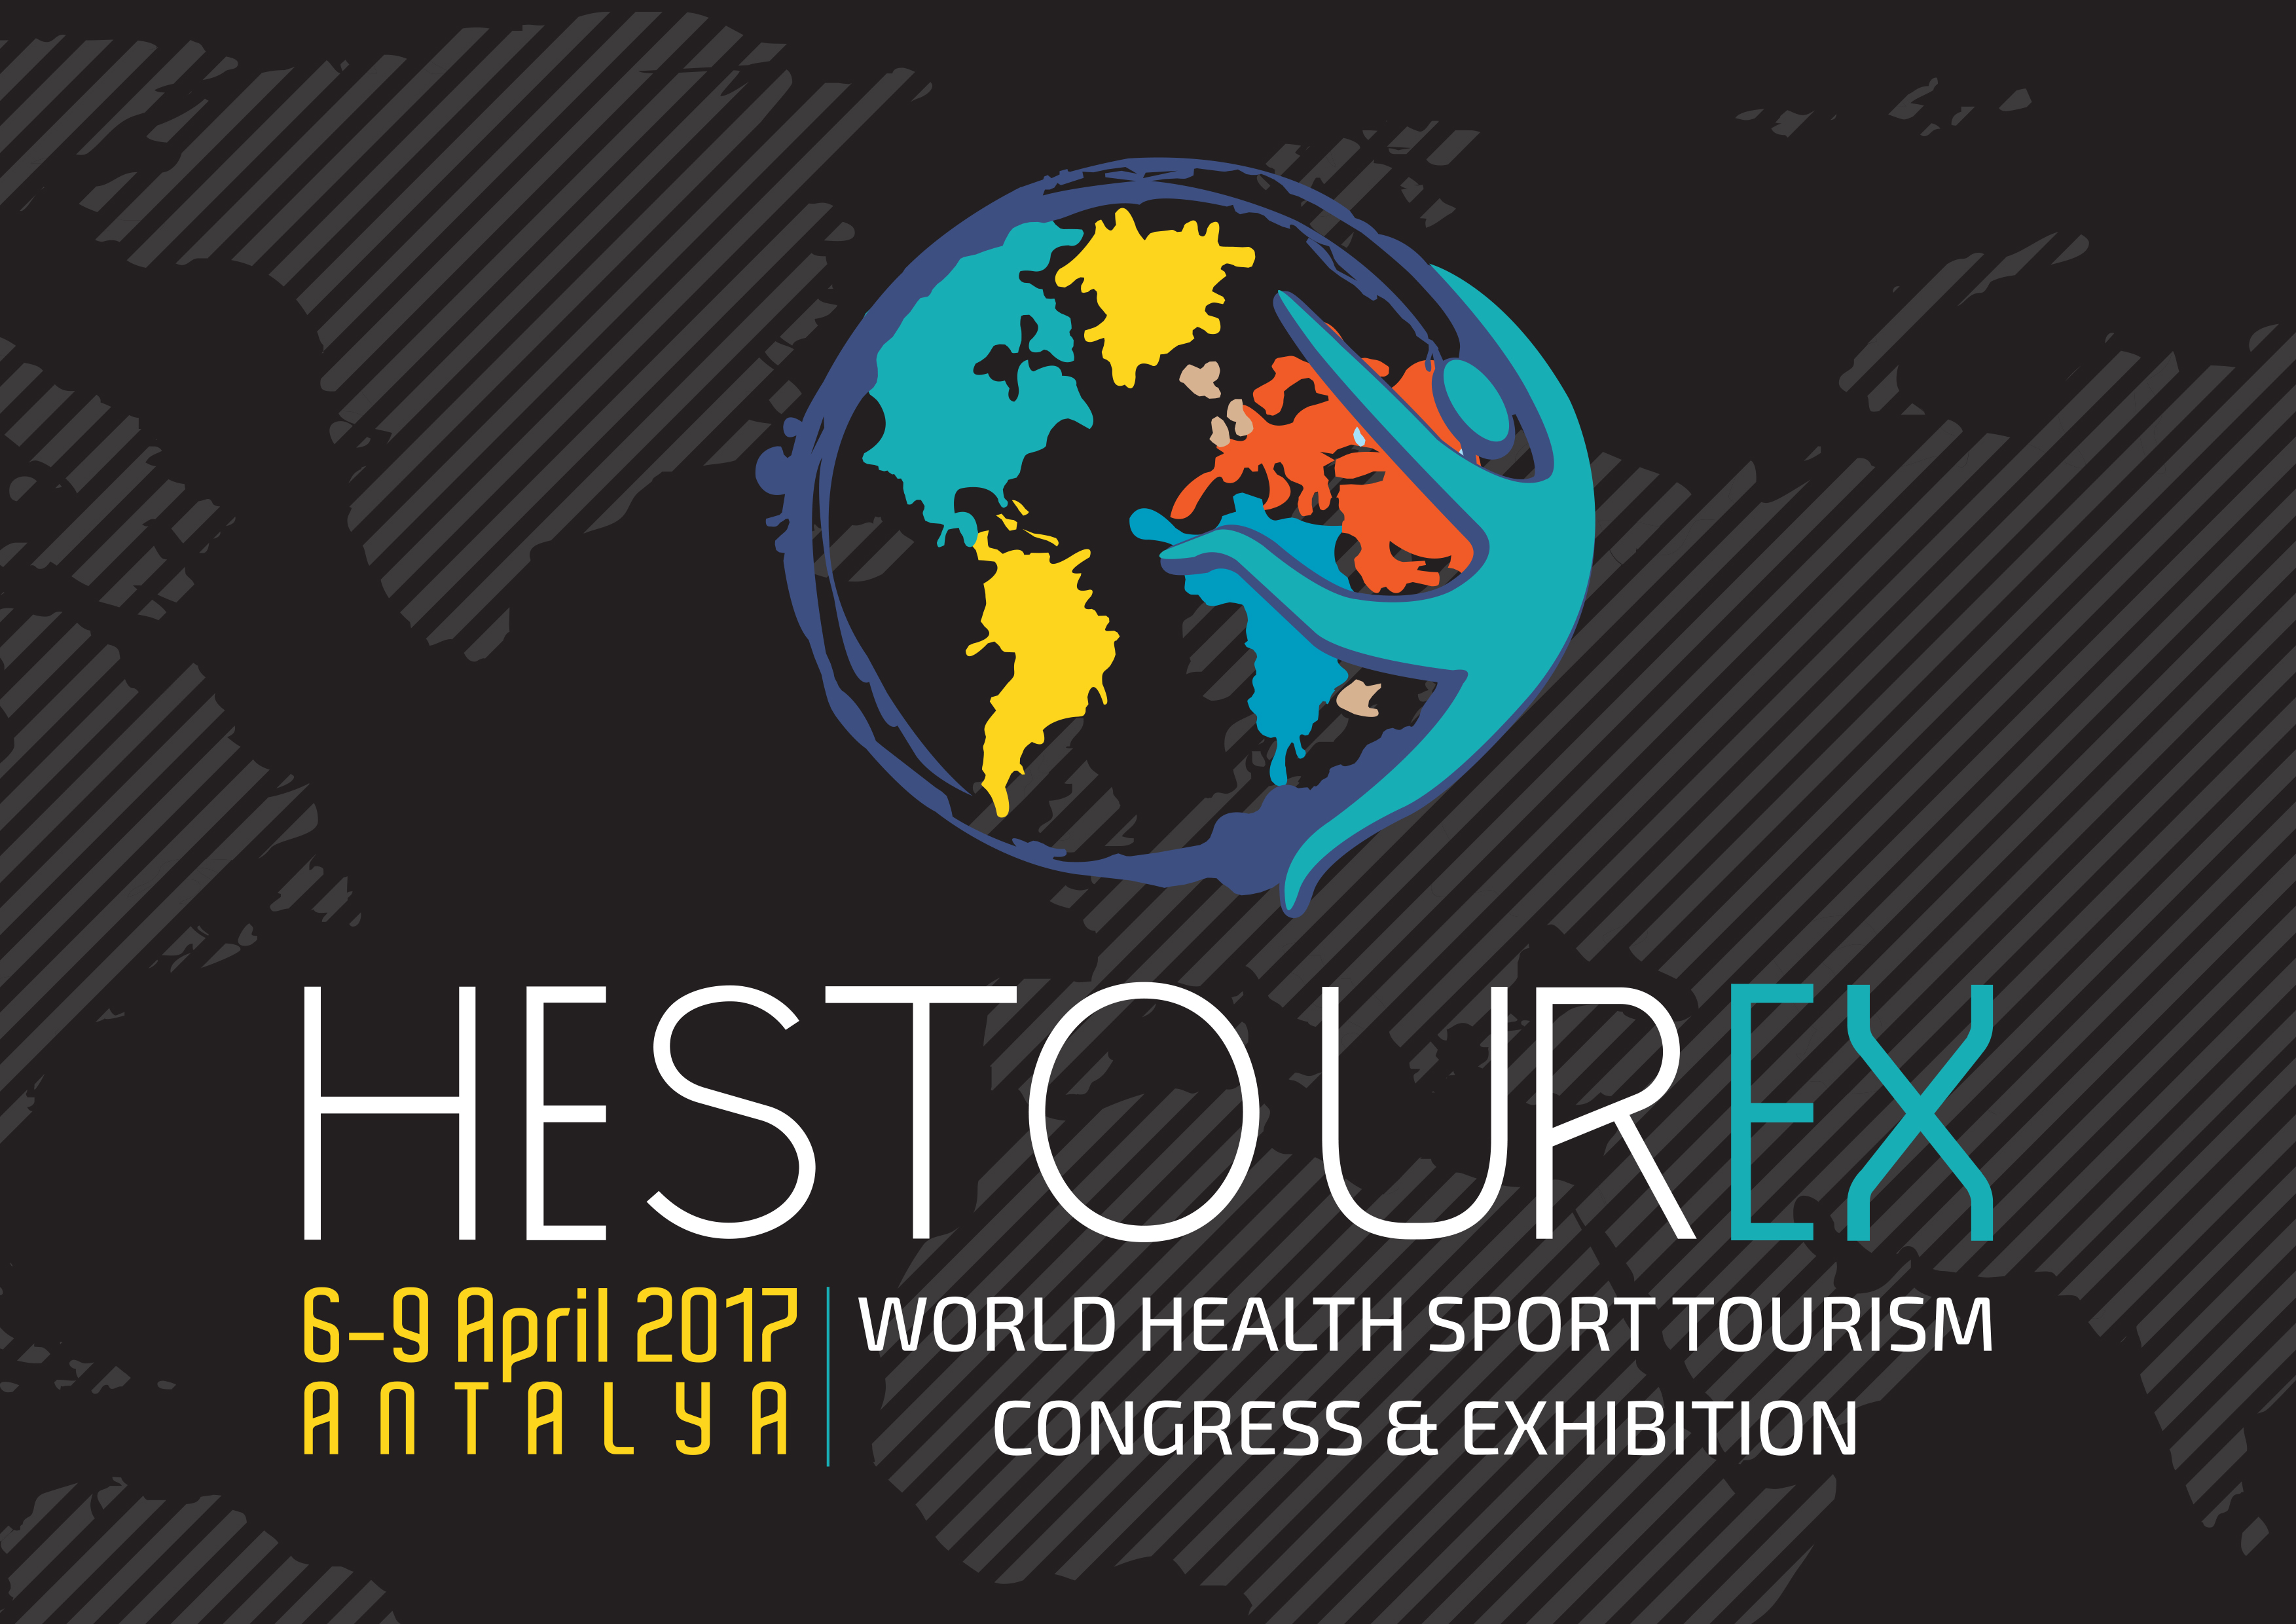 HESTOUREX WORLD HEALTH SPORTS TOURISM 2017